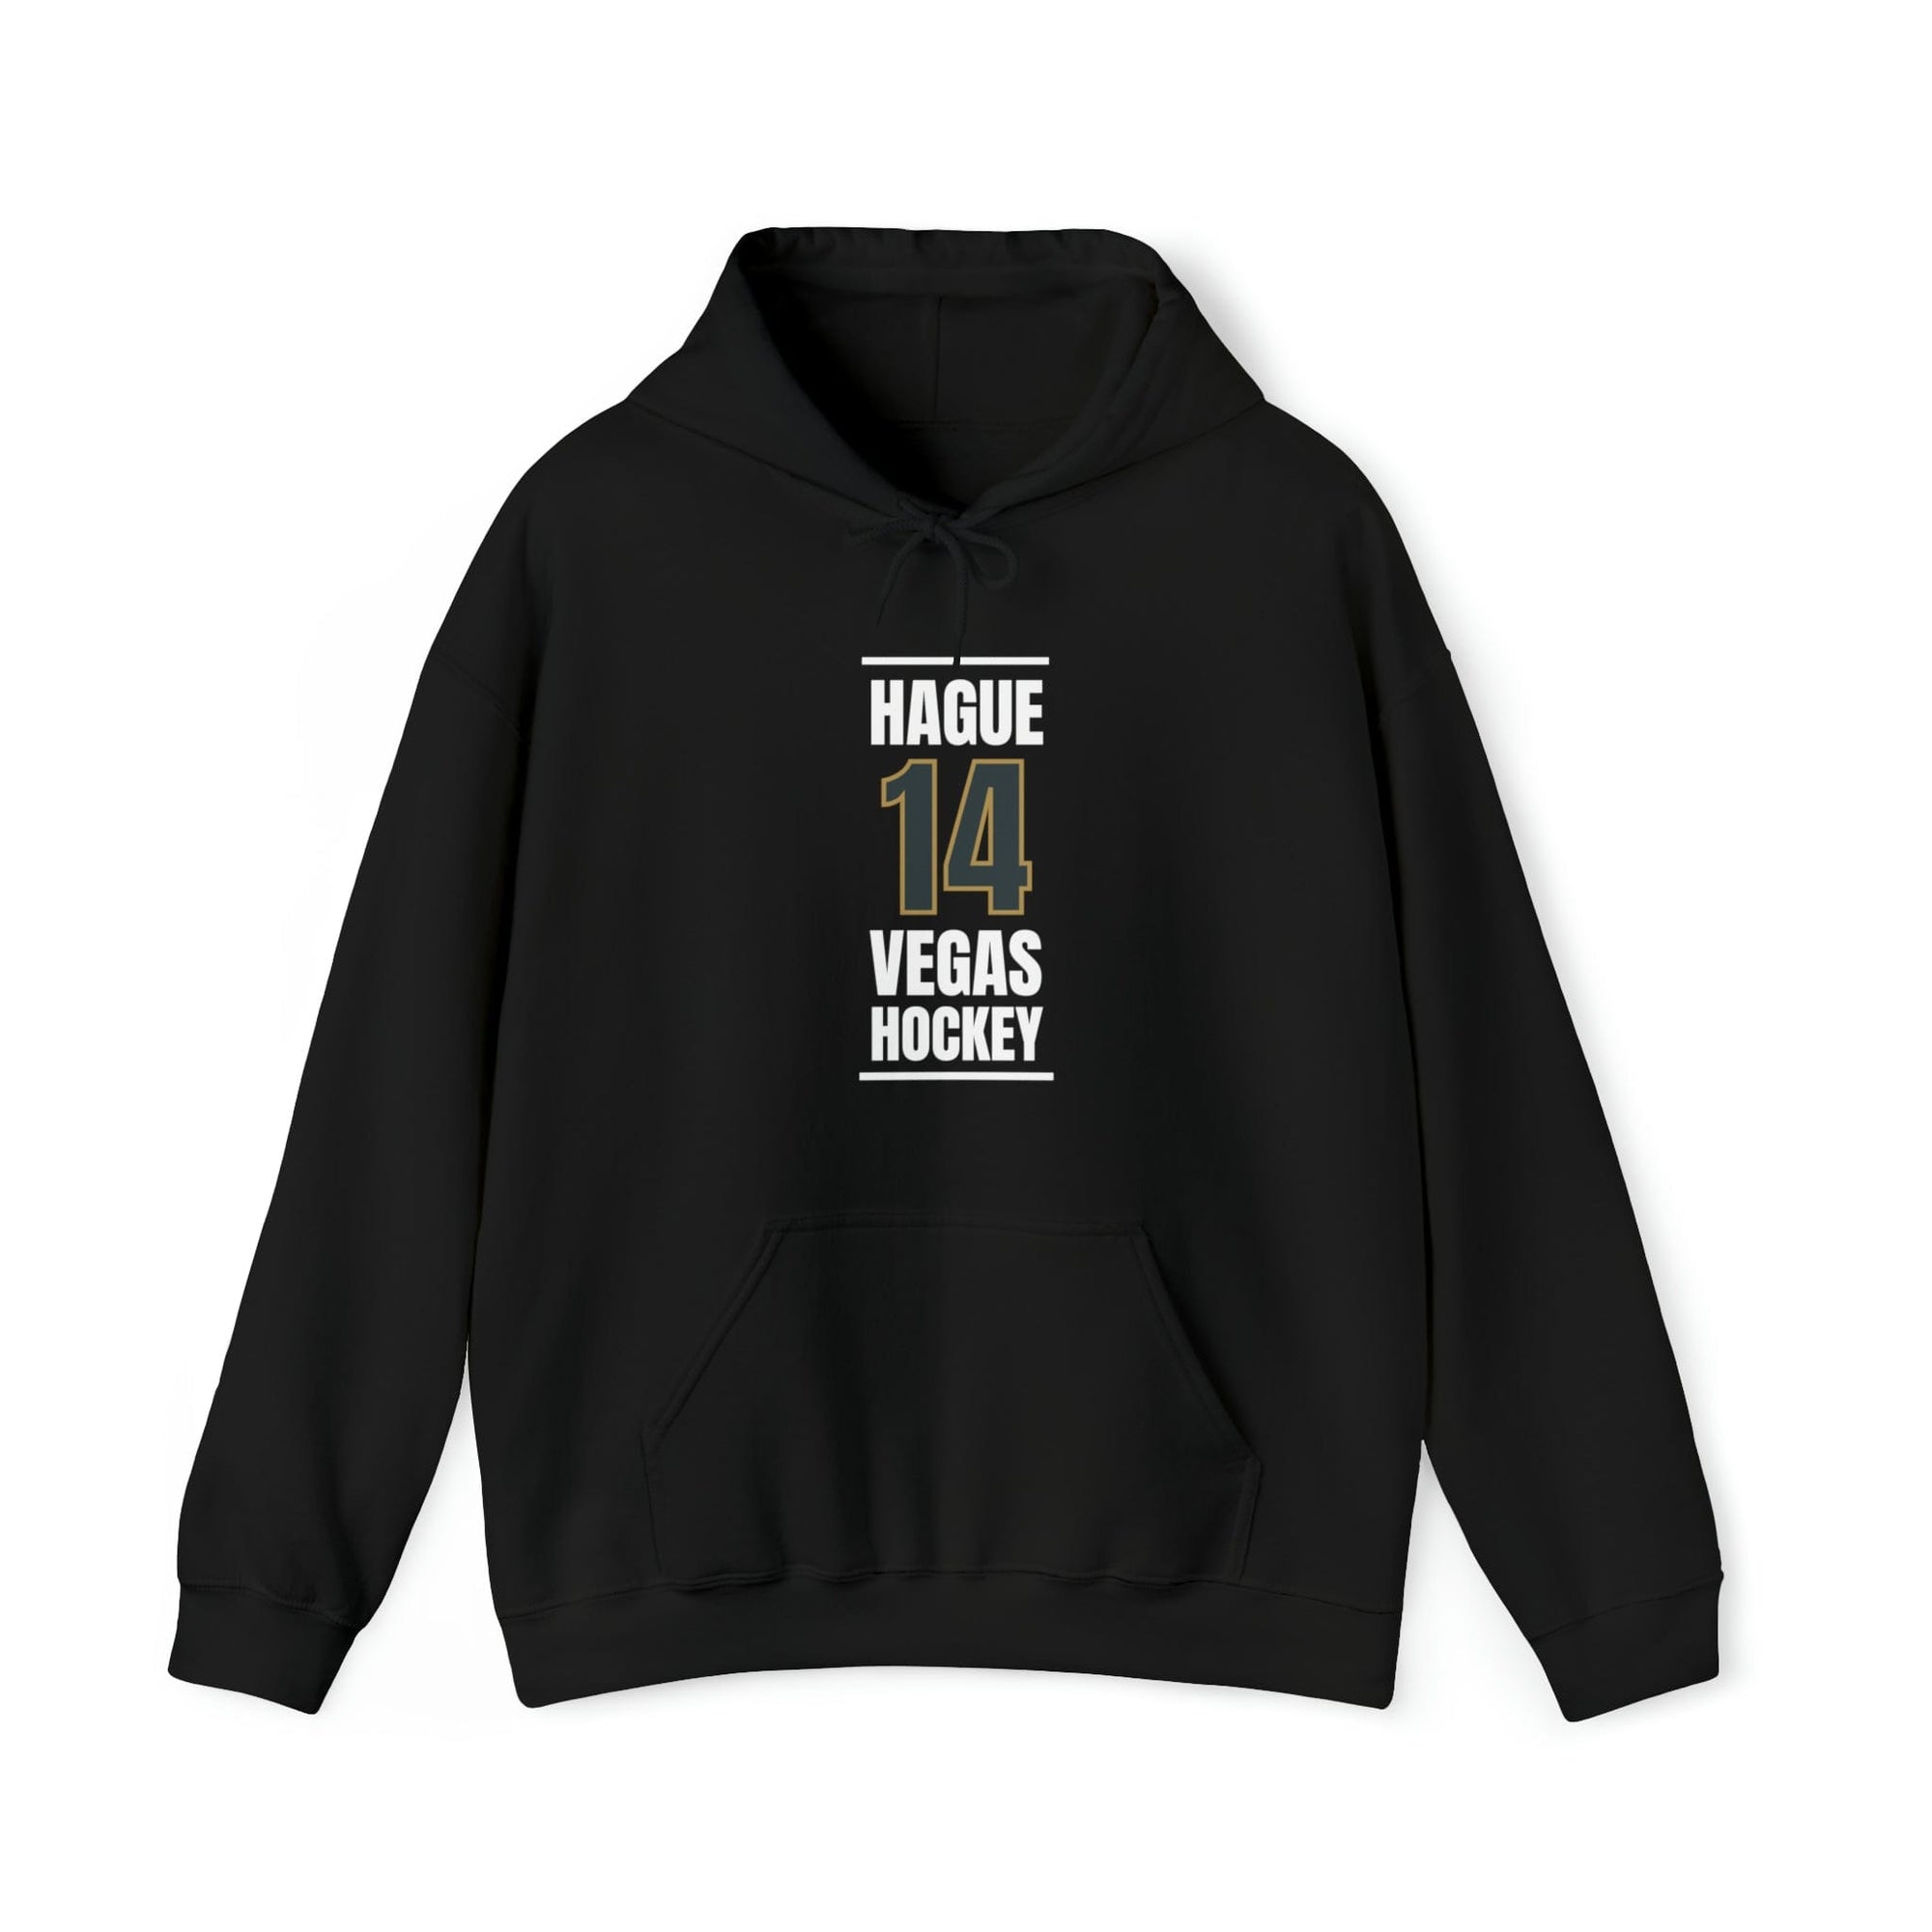 Hoodie Hague 14 Vegas Hockey Steel Gray Vertical Design Unisex Hooded Sweatshirt